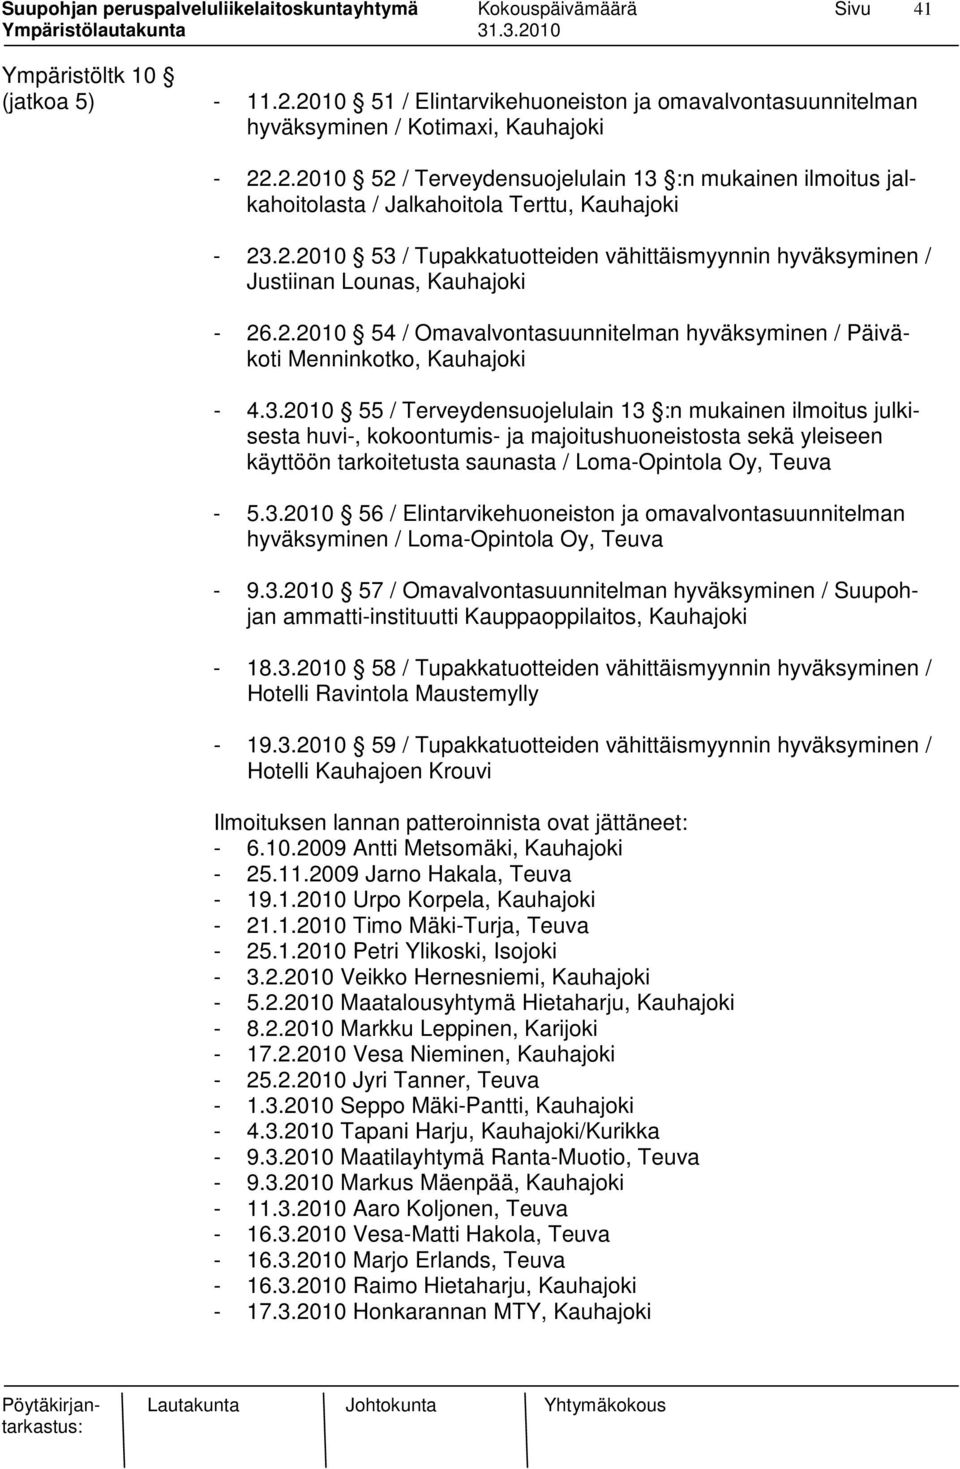 3.2010 56 / Elintarvikehuoneiston ja omavalvontasuunnitelman hyväksyminen / Loma-Opintola Oy, Teuva - 9.3.2010 57 / Omavalvontasuunnitelman hyväksyminen / Suupohjan ammatti-instituutti Kauppaoppilaitos, Kauhajoki - 18.